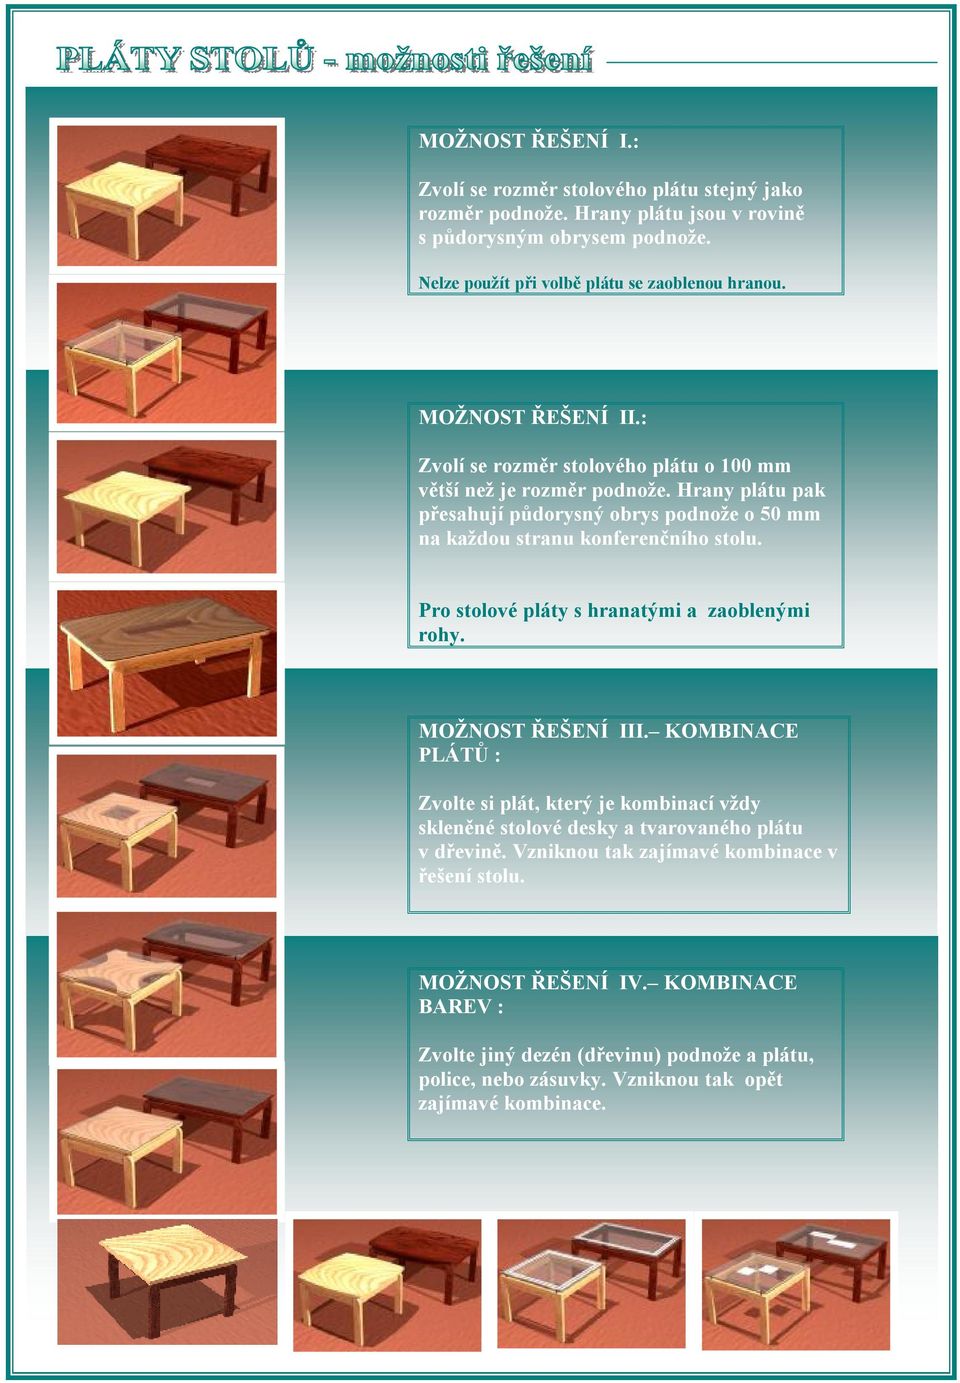 Pro stolové pláty s hranatými a zaoblenými rohy. MOŽNOST ŘEŠENÍ III. KOMBINACE PLÁTŮ : Zvolte si plát, který je kombinací vždy skleněné stolové desky a tvarovaného plátu v dřevině.